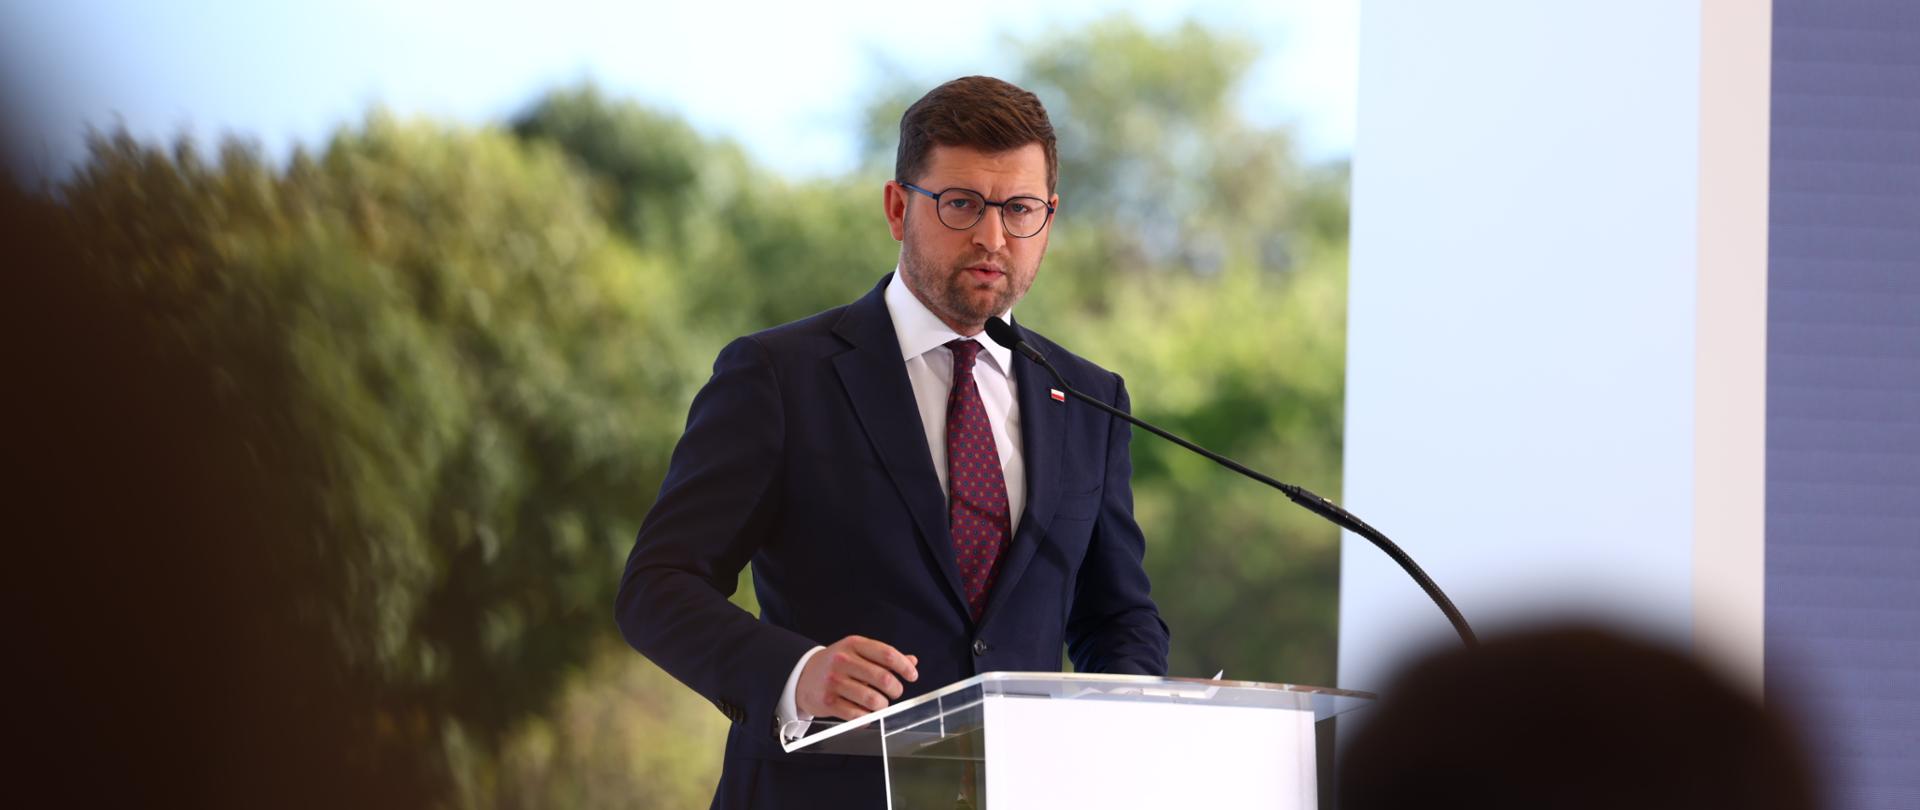 Wiceminister Andrzej Śliwka podczas uroczystości podpisania umowy na budowę nowoczesnej tłoczni oleju rzepakowego w Kętrzynie w województwie warmińsko-mazurskim.